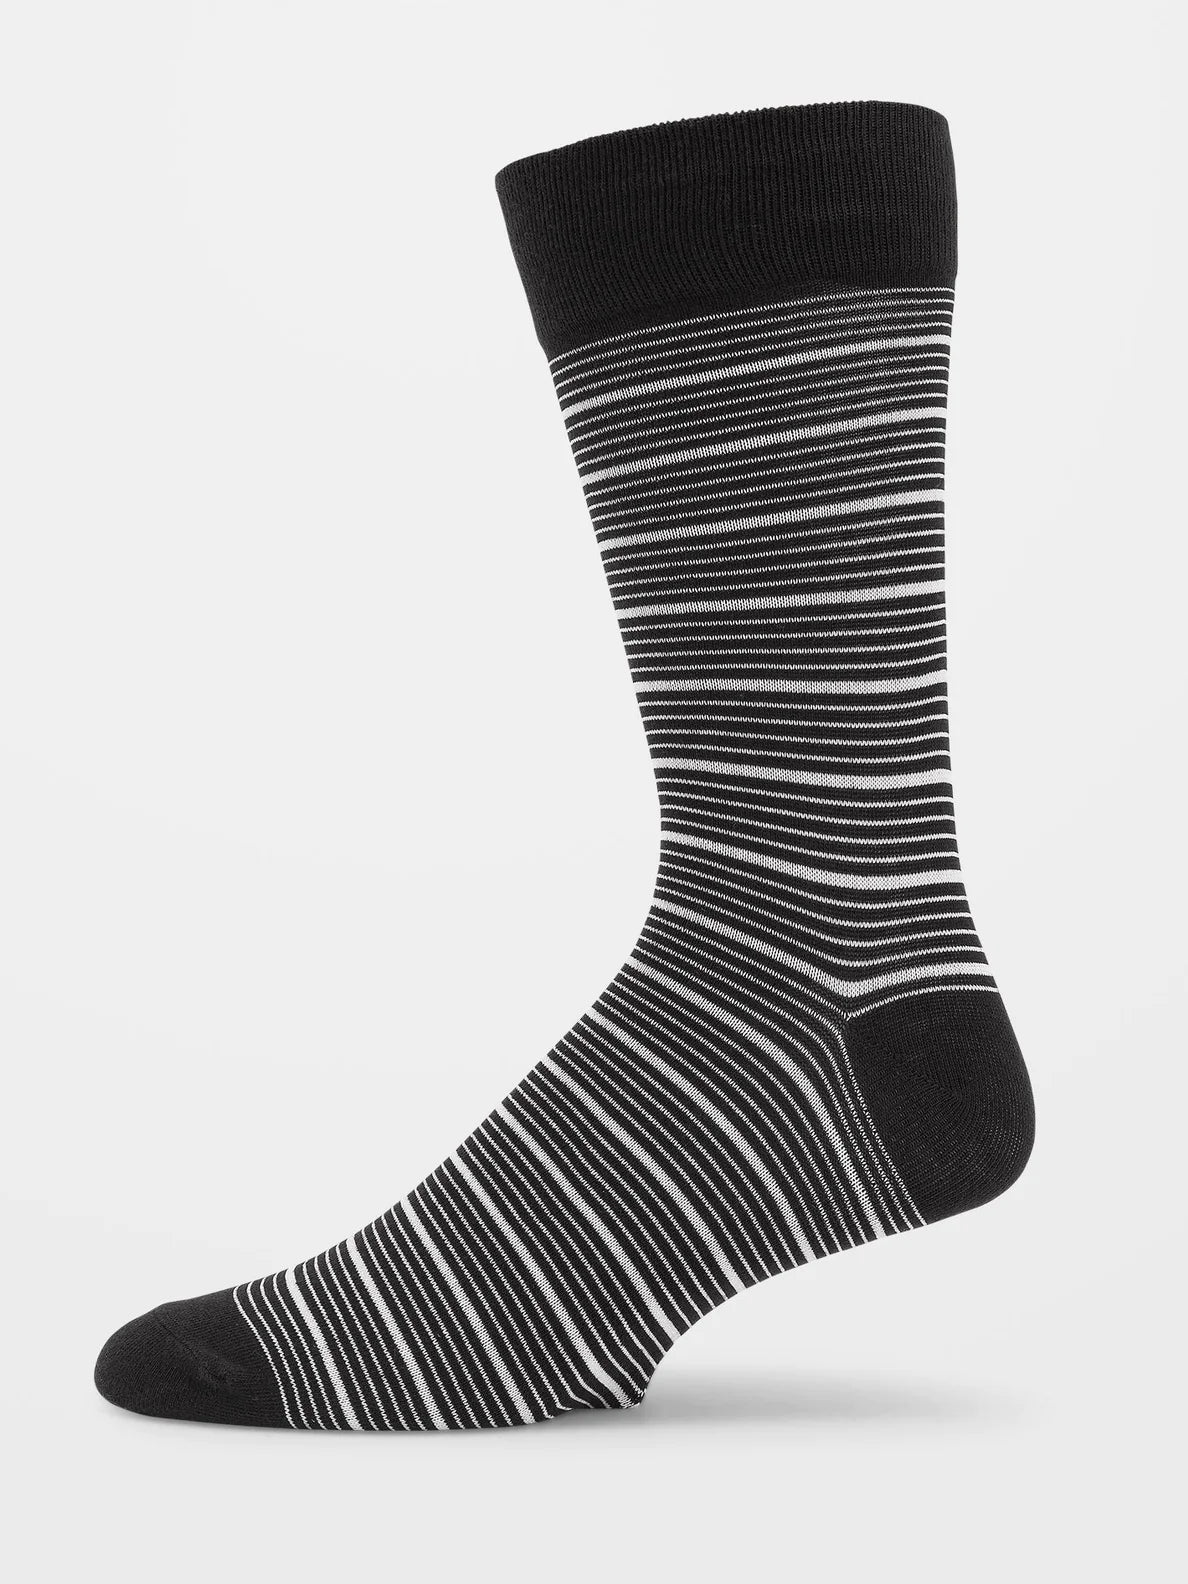 Volcom True Sock PR Whitecap grau | Meistverkaufte Produkte | Neue Produkte | Neueste Produkte | surfdevils.com